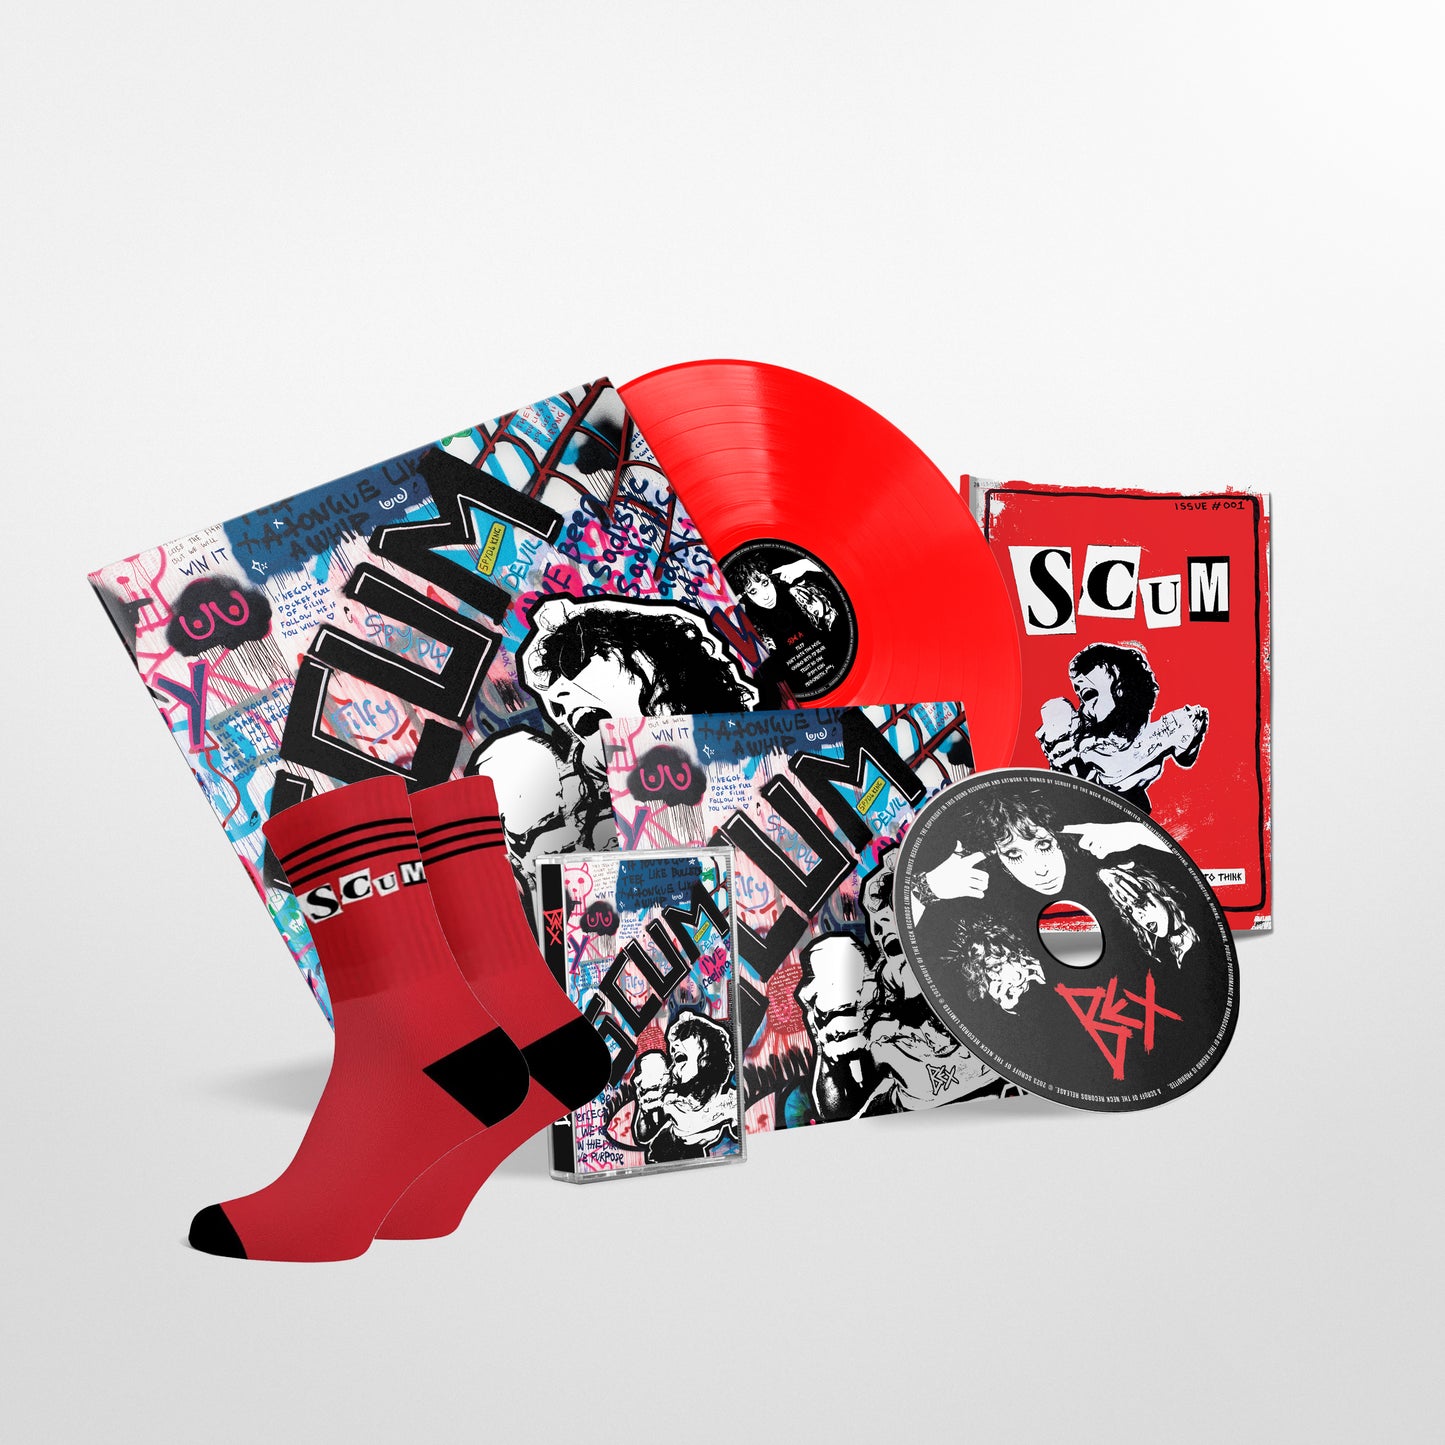 BEX - 'SCUM' EP Deluxe Edition - Bundle - Red 12" Vinyl Disc + CD + Cassette + Socks + Zine